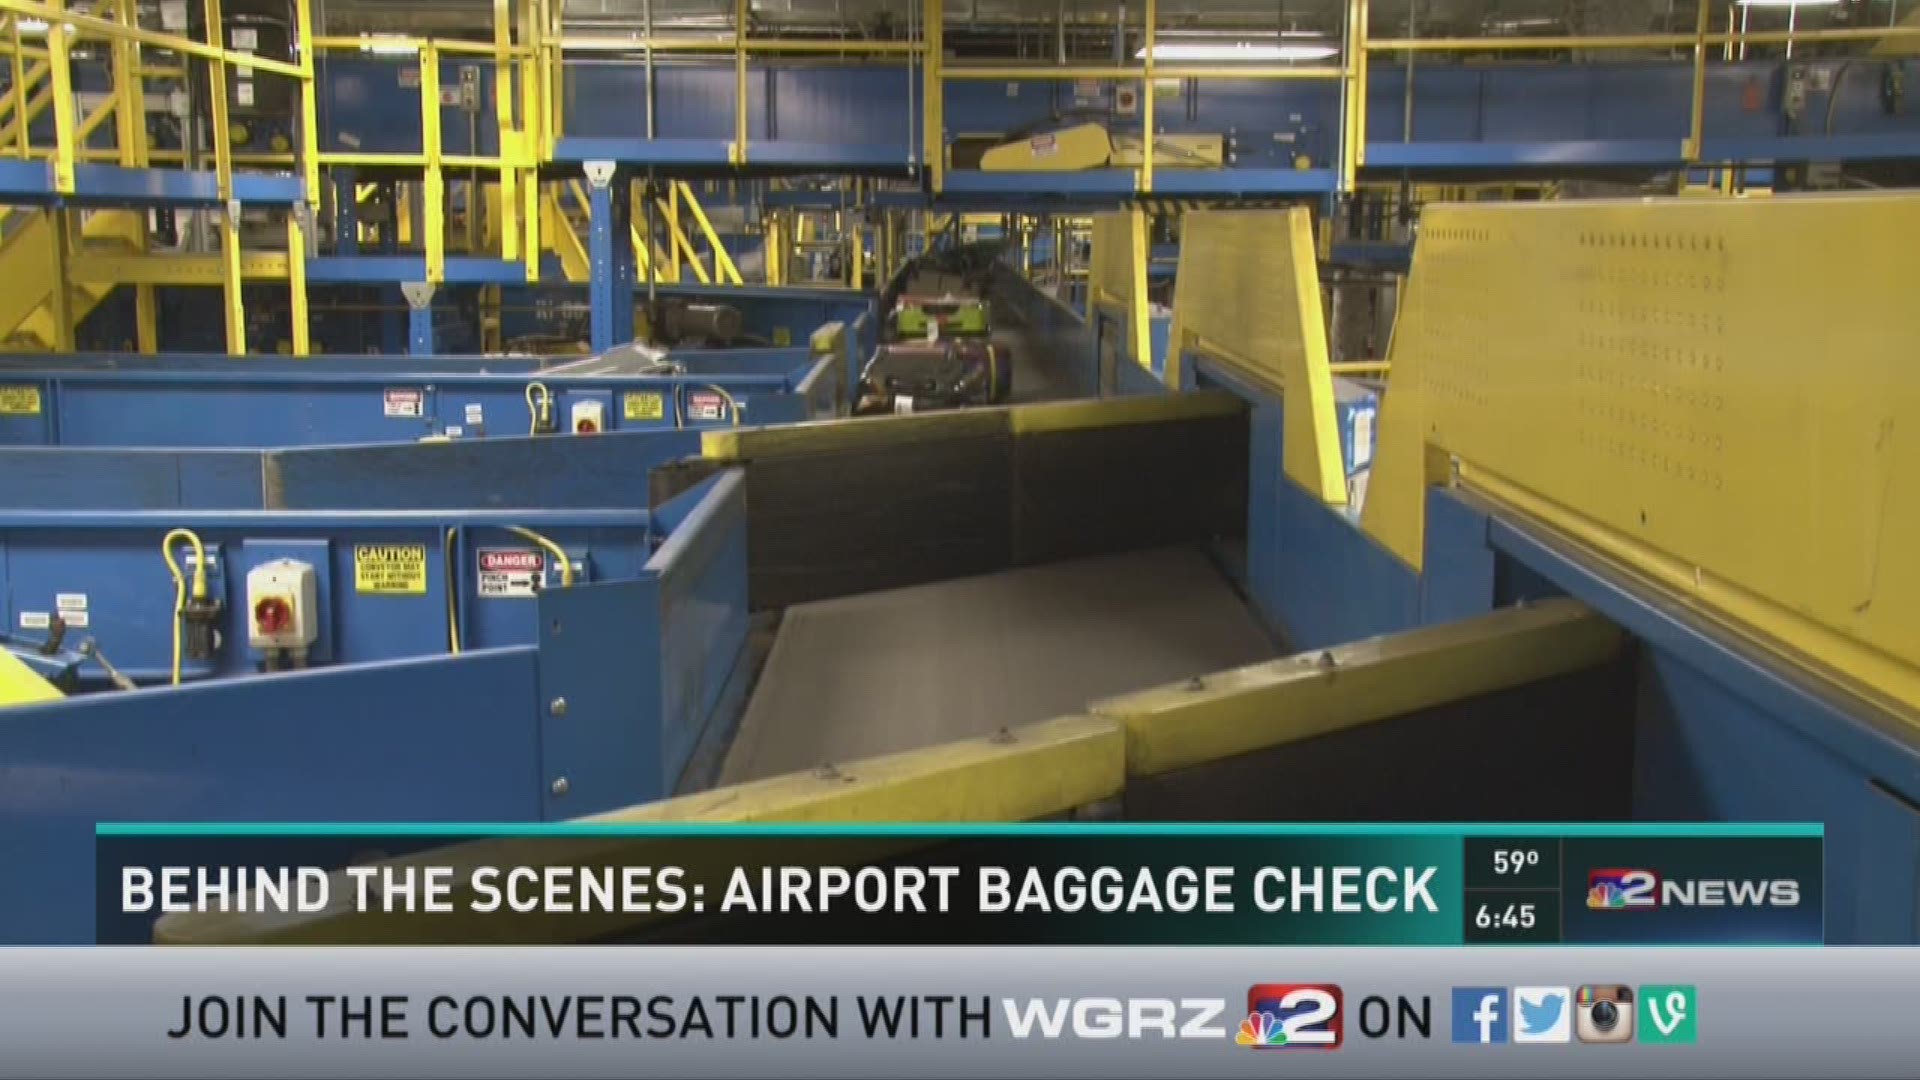 Behind the scenes: Airport baggage screening